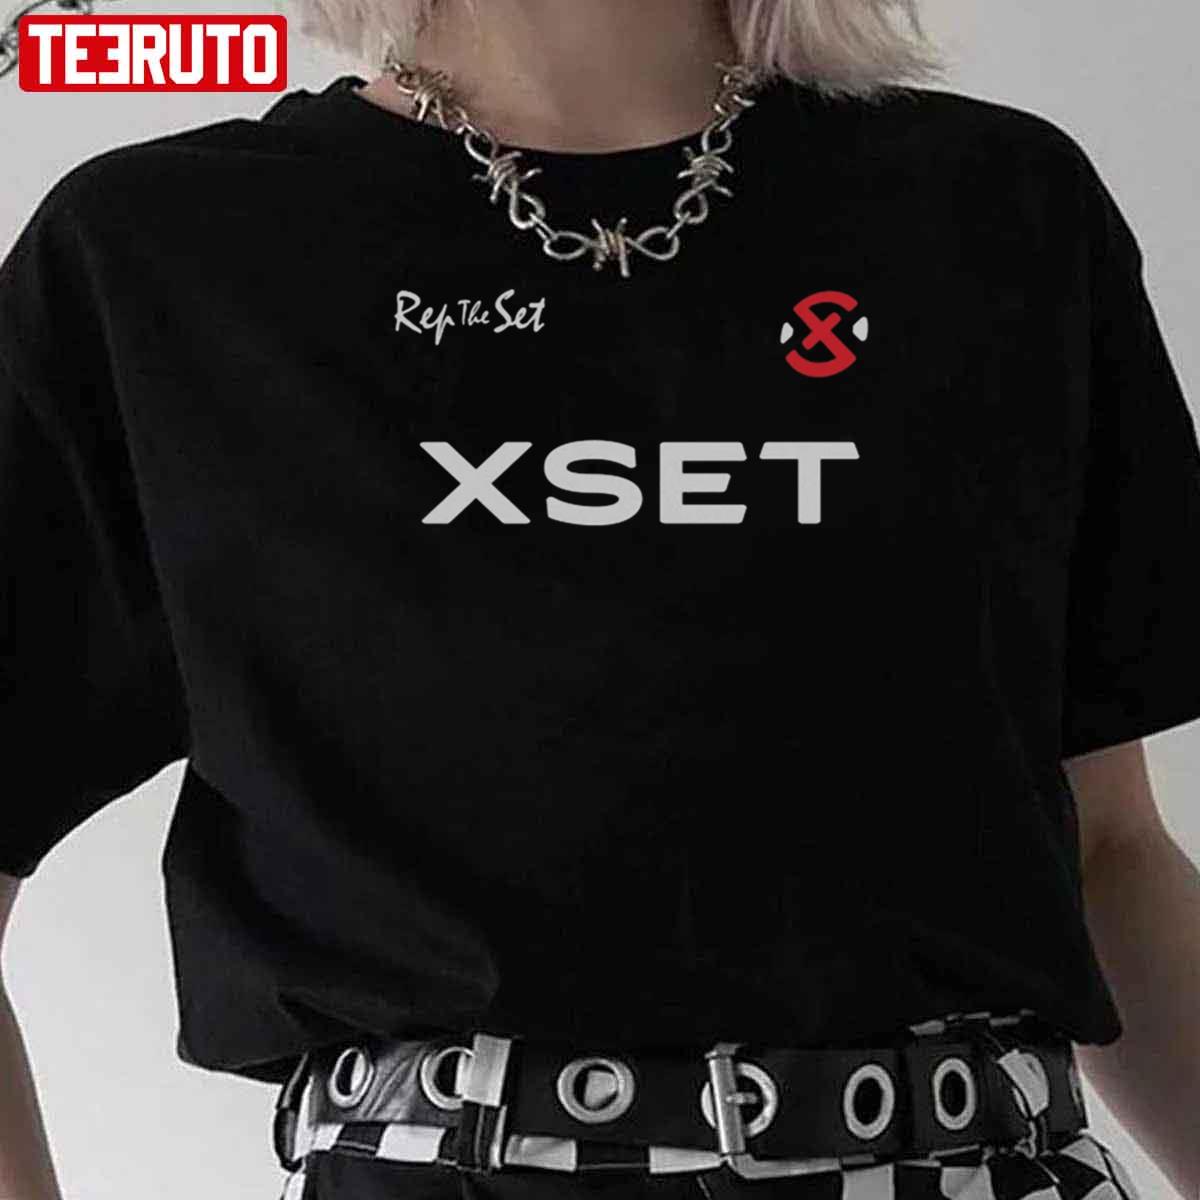 XSET The Set Scope Unisex T-Shirt